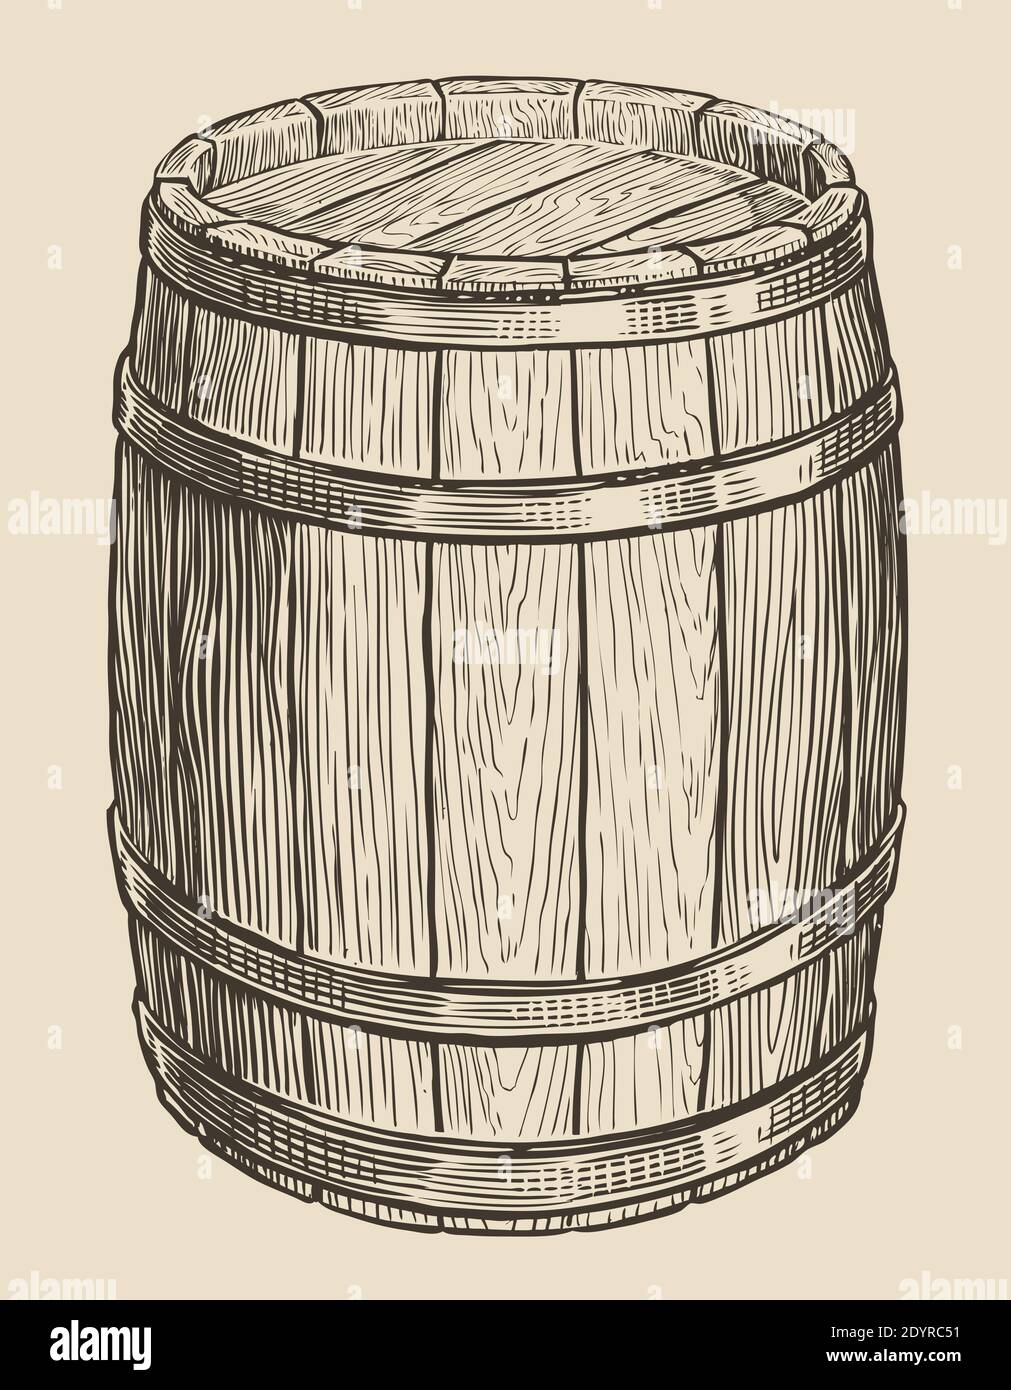 Un barile di legno per vino e altri alcolici. Disegnare un'illustrazione vettoriale vintage Illustrazione Vettoriale